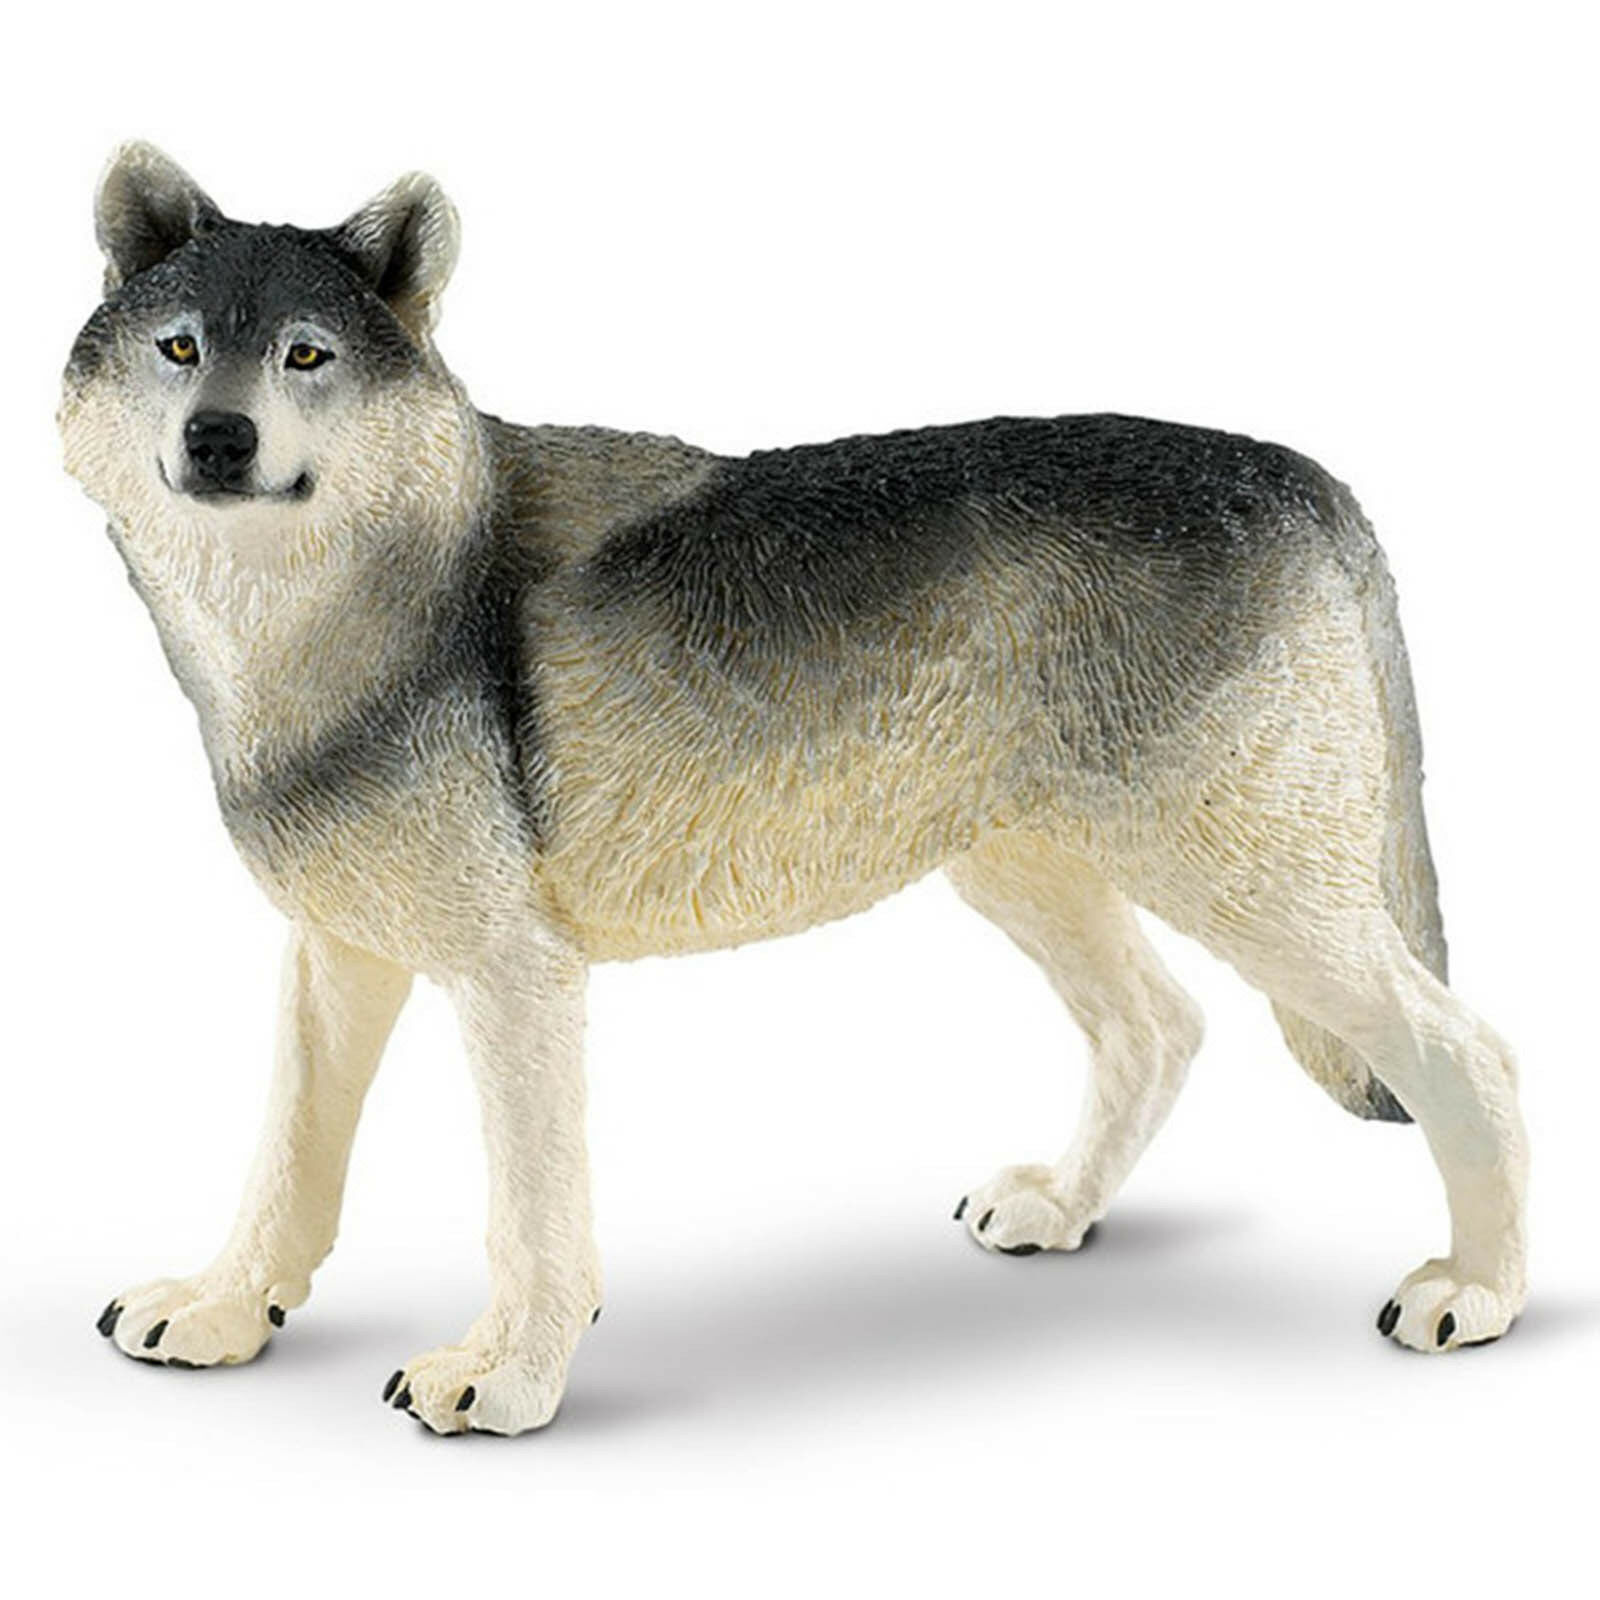 Gray Wolf Wildlife Wonders Figure Safari Ltd New Toys Educational Figurines